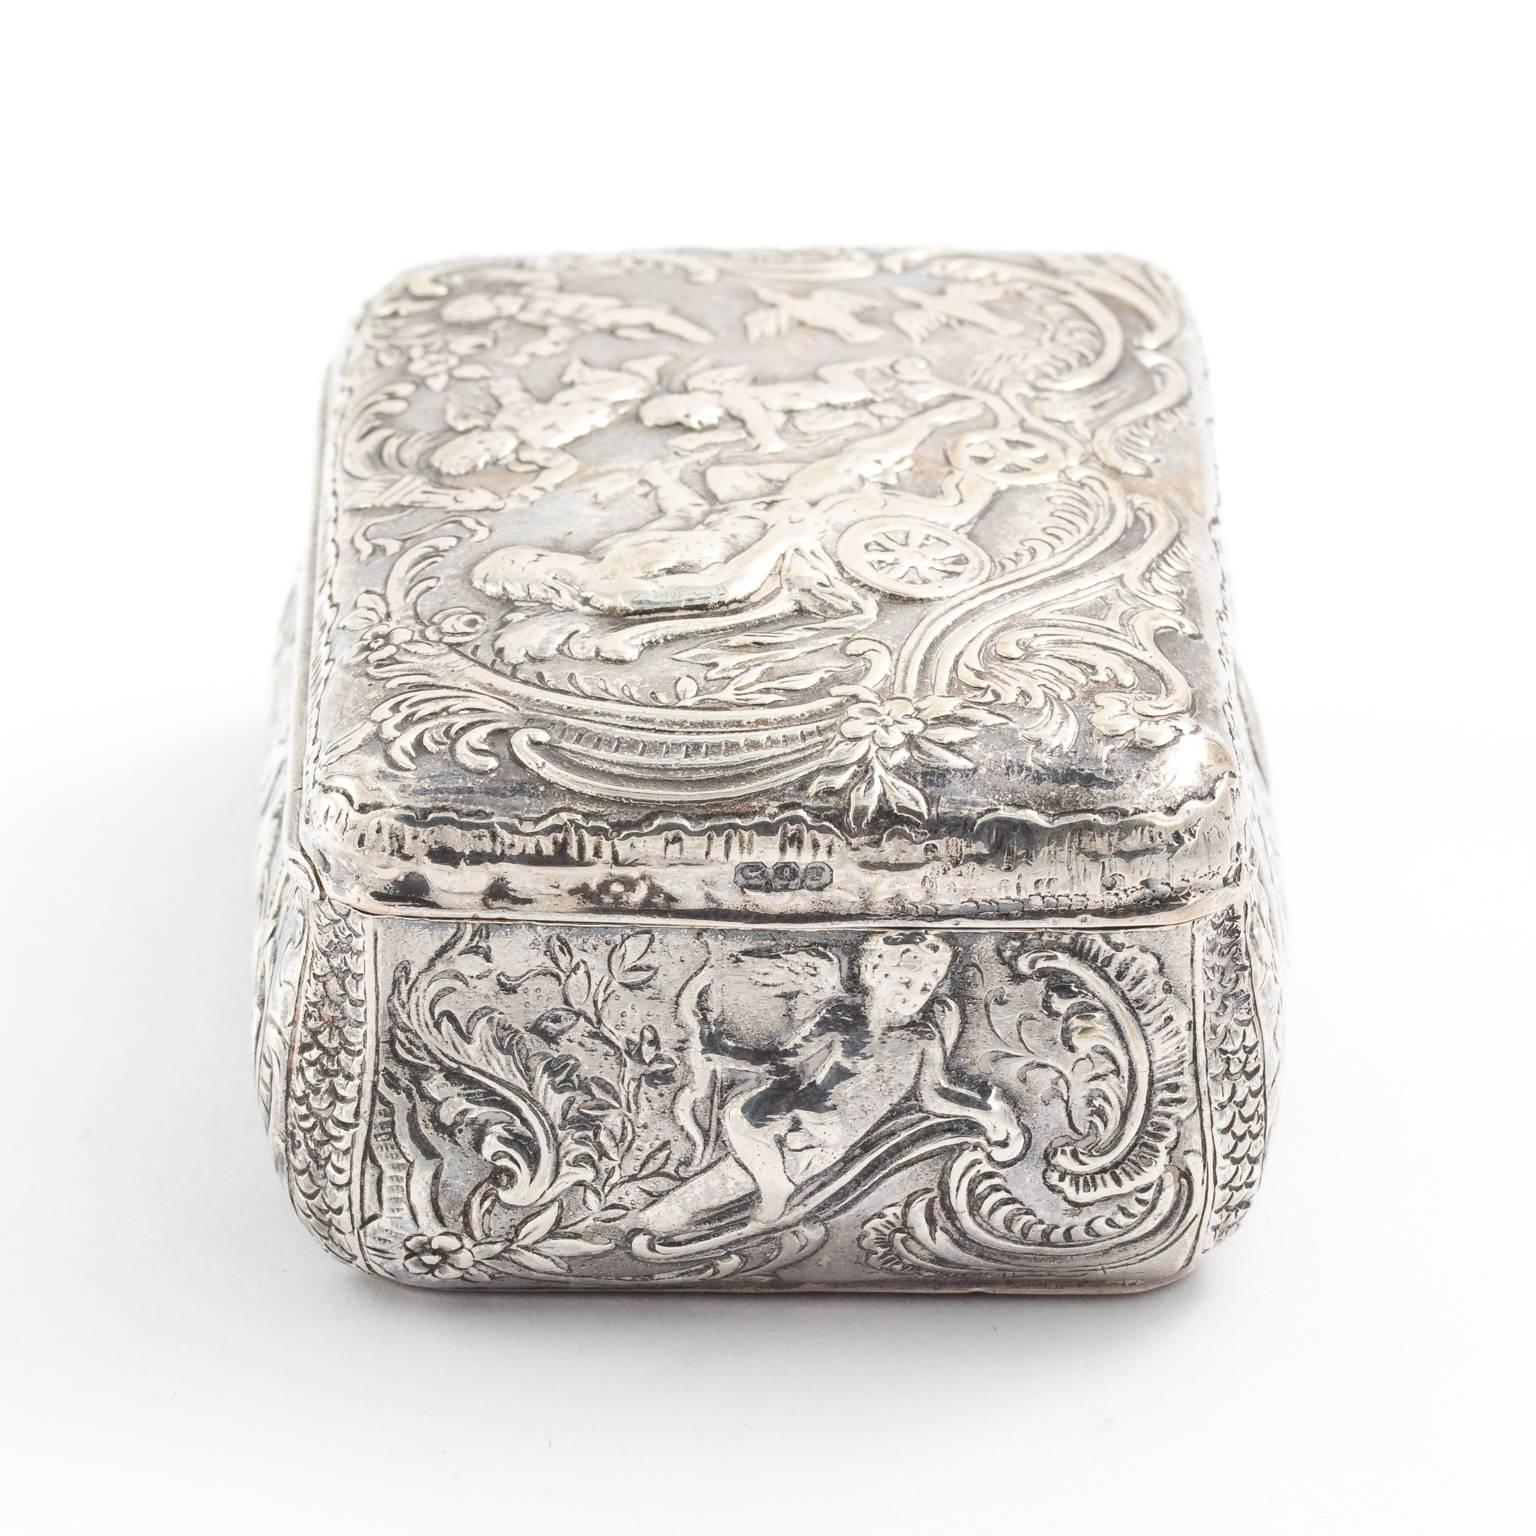 20th Century Sterling Silver Repoussé Trinket Box, circa 1900